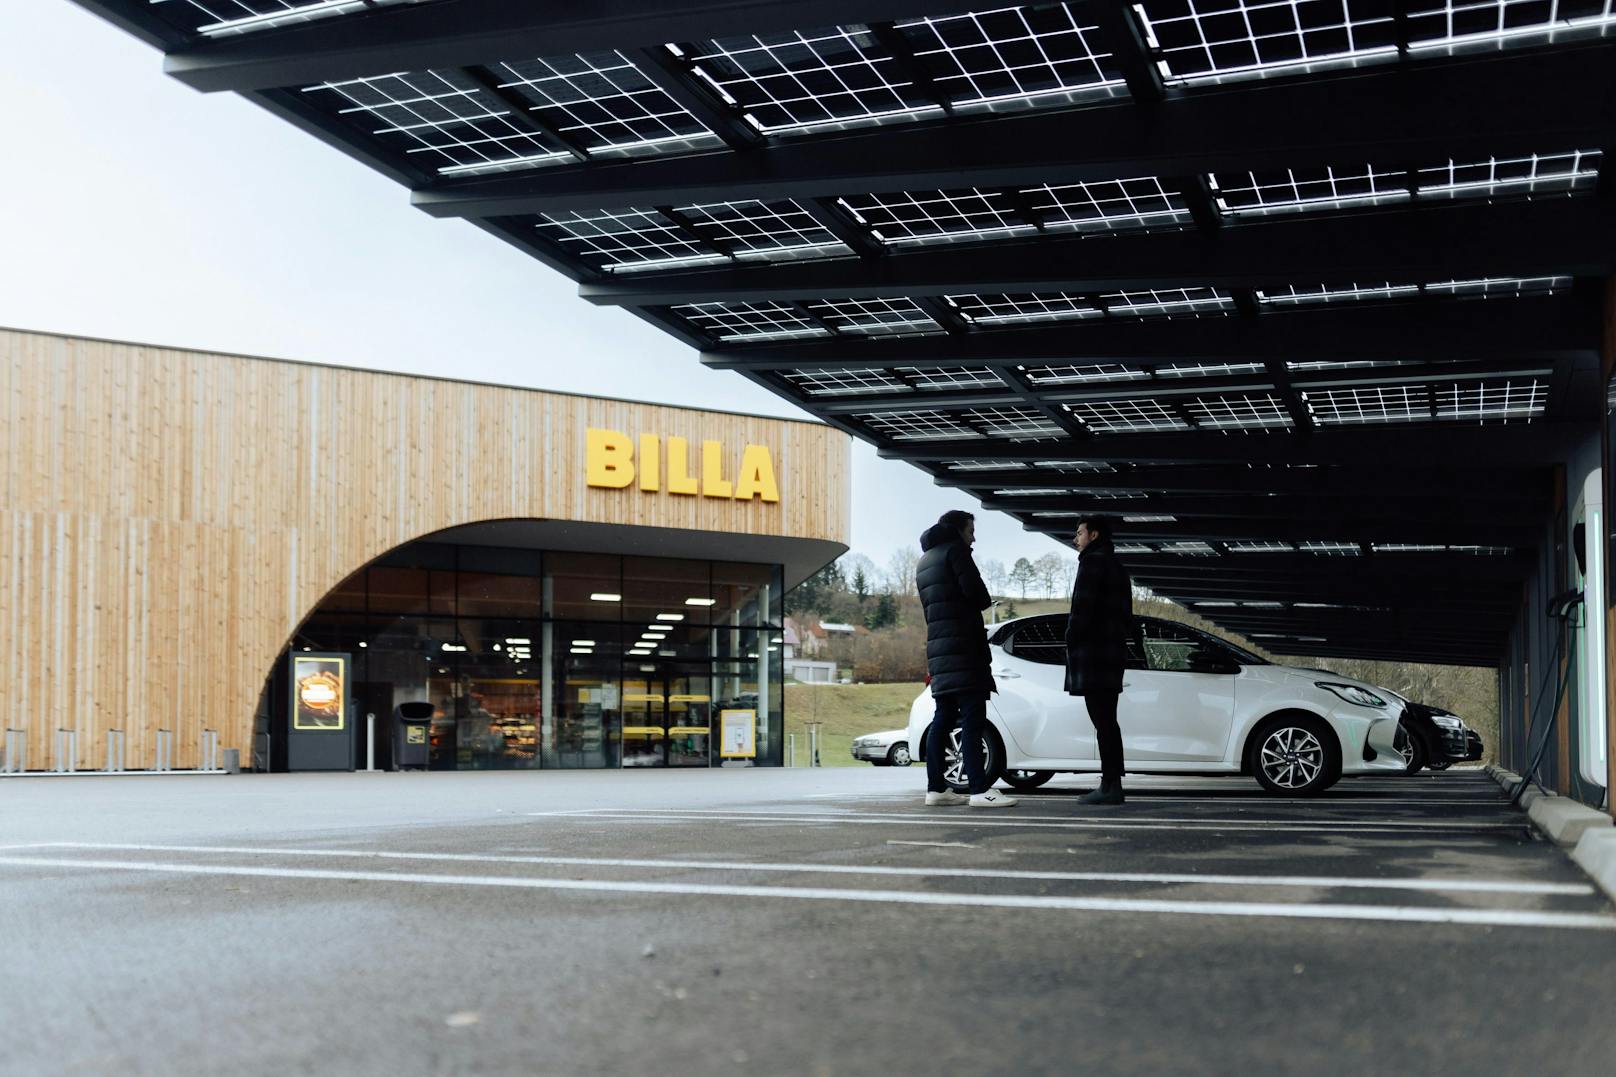 REWE, Tietoevry &amp; Microsoft stellen ersten energieeffizienten Billa-Supermarkt der Zukunft vor.